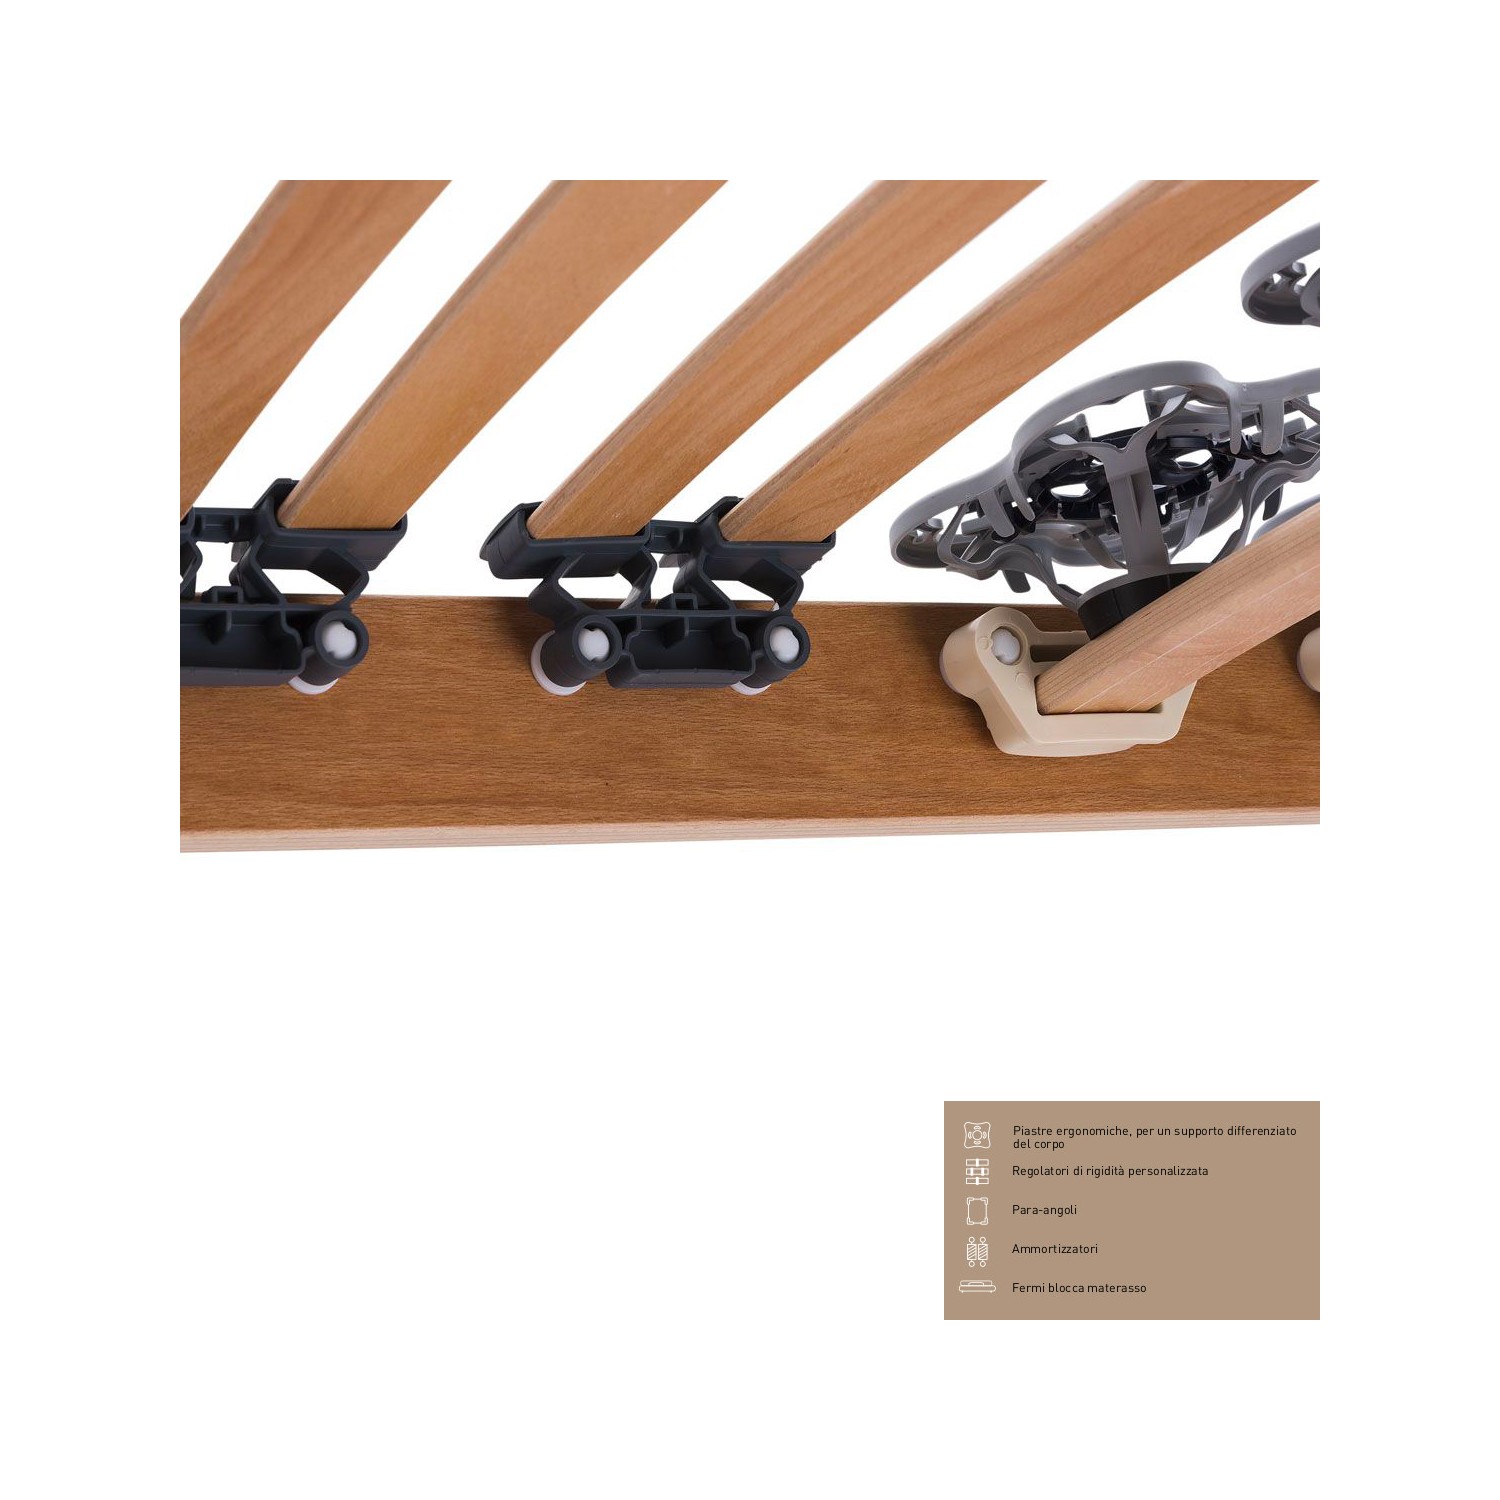 Rete Magniflex ERGO DUE FISSA cm 200 x 200 piastre ergonomiche, regolatori di rigidità doghe legno